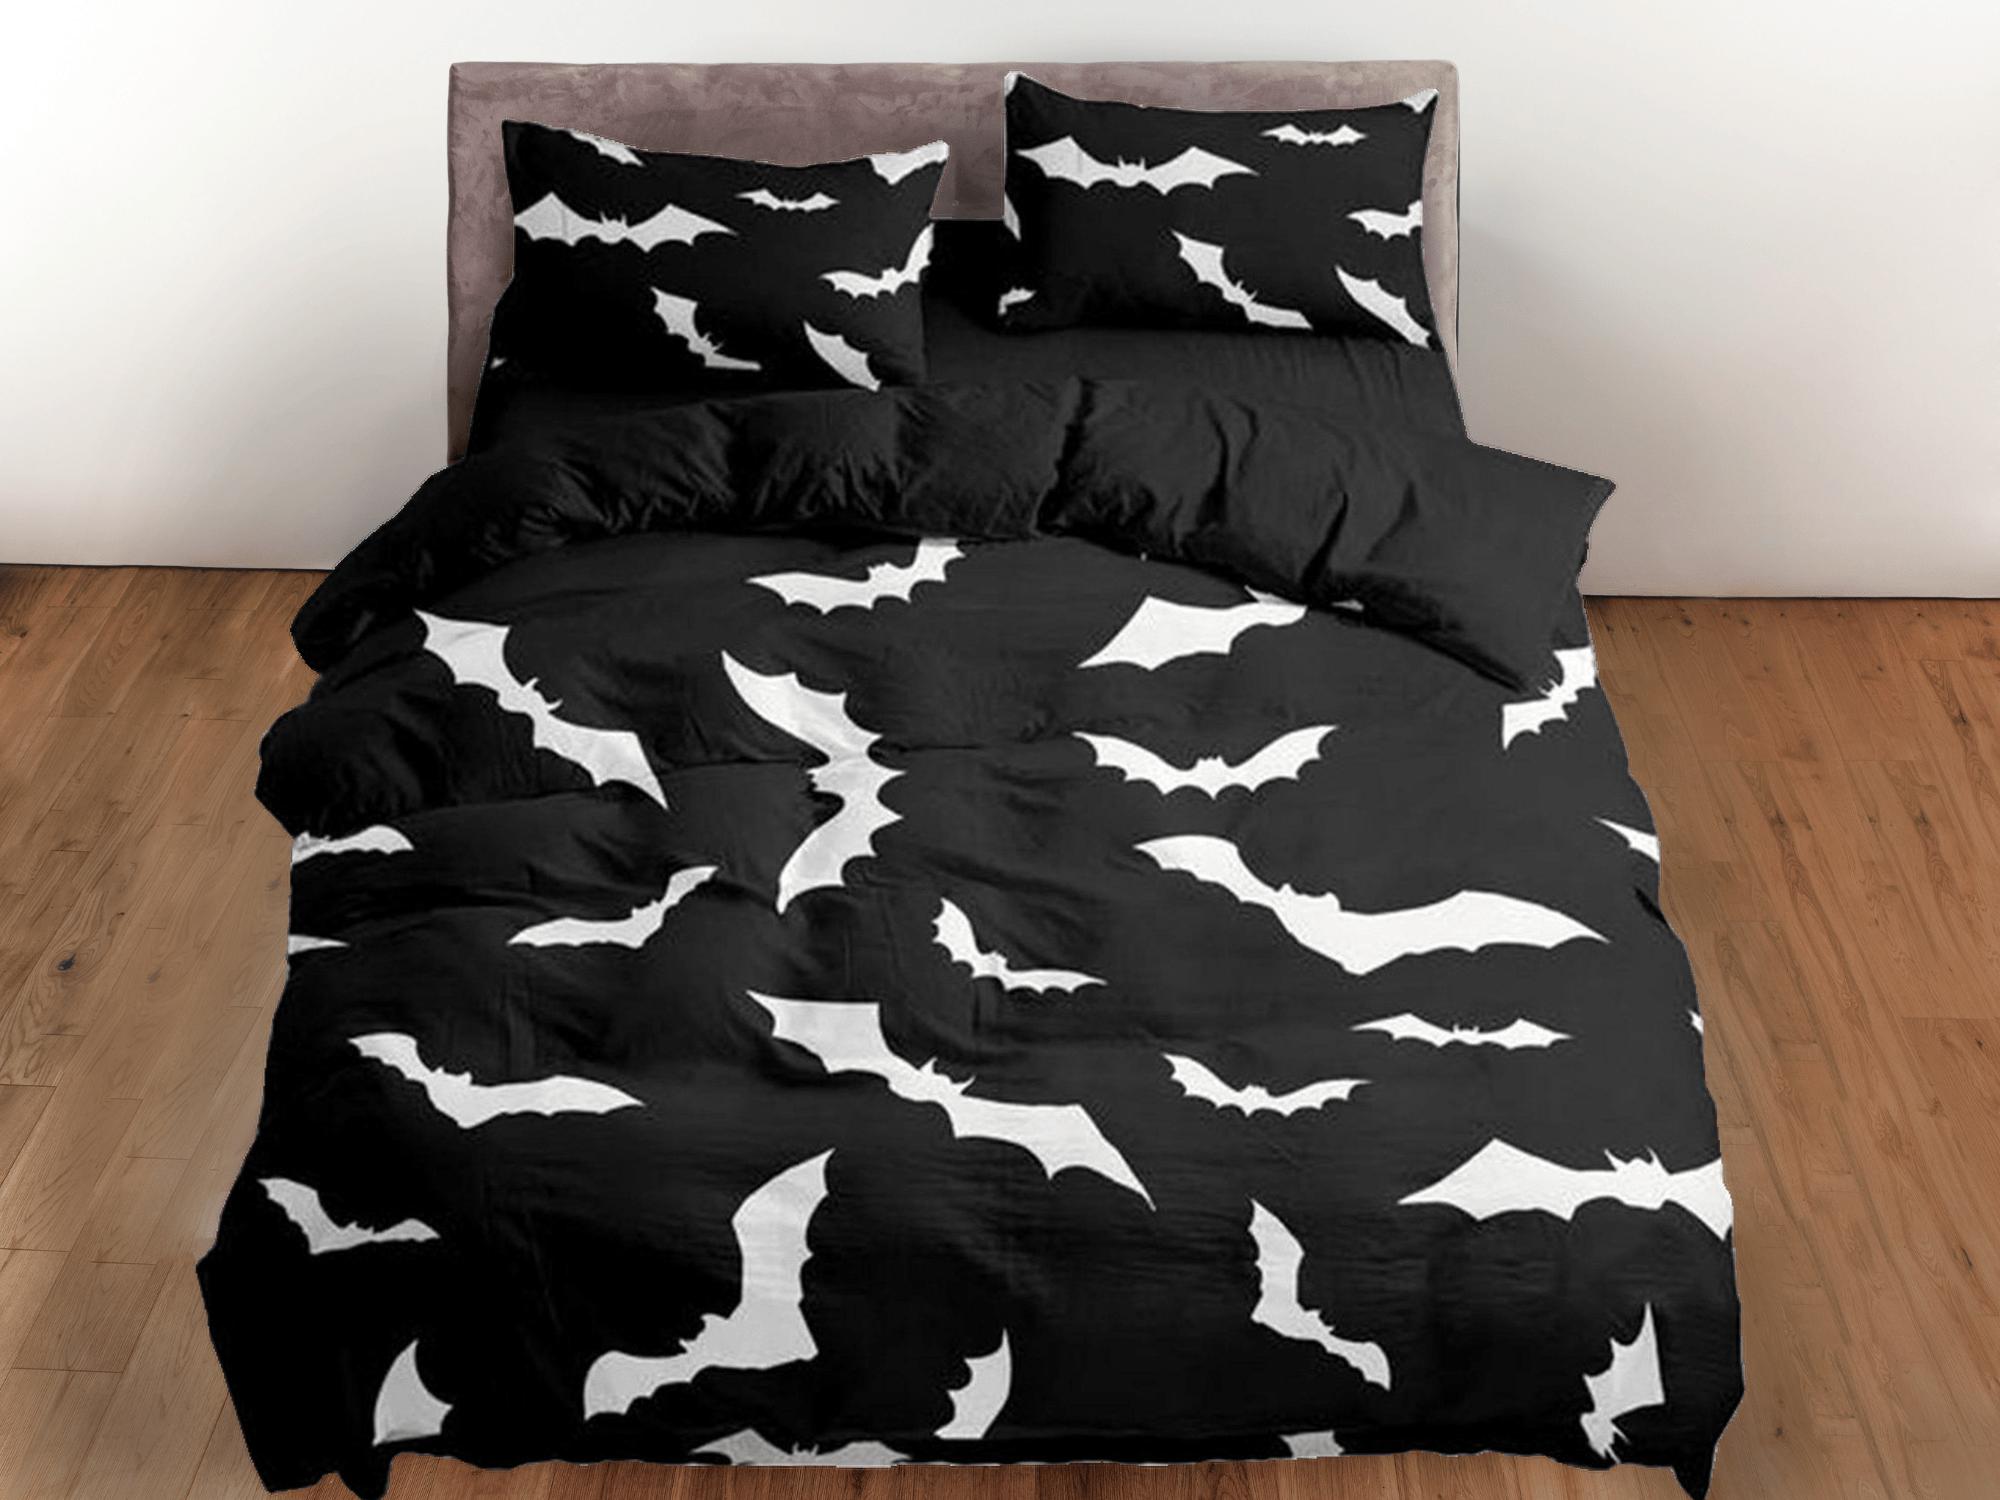 daintyduvet Bats halloween full size bedding & pillowcase, black duvet cover set dorm bedding, halloween decor, nursery toddler bedding, halloween gift